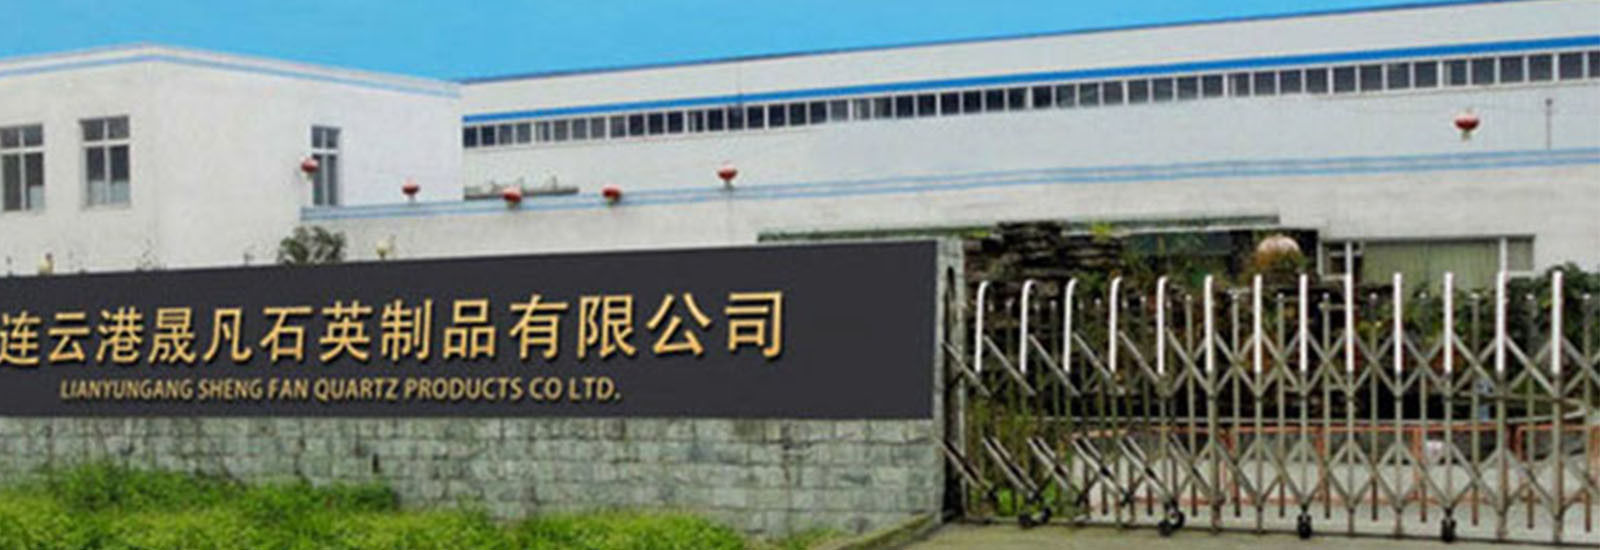 Trung Quốc Lianyungang Shengfan Quartz Product Co., Ltd hồ sơ công ty